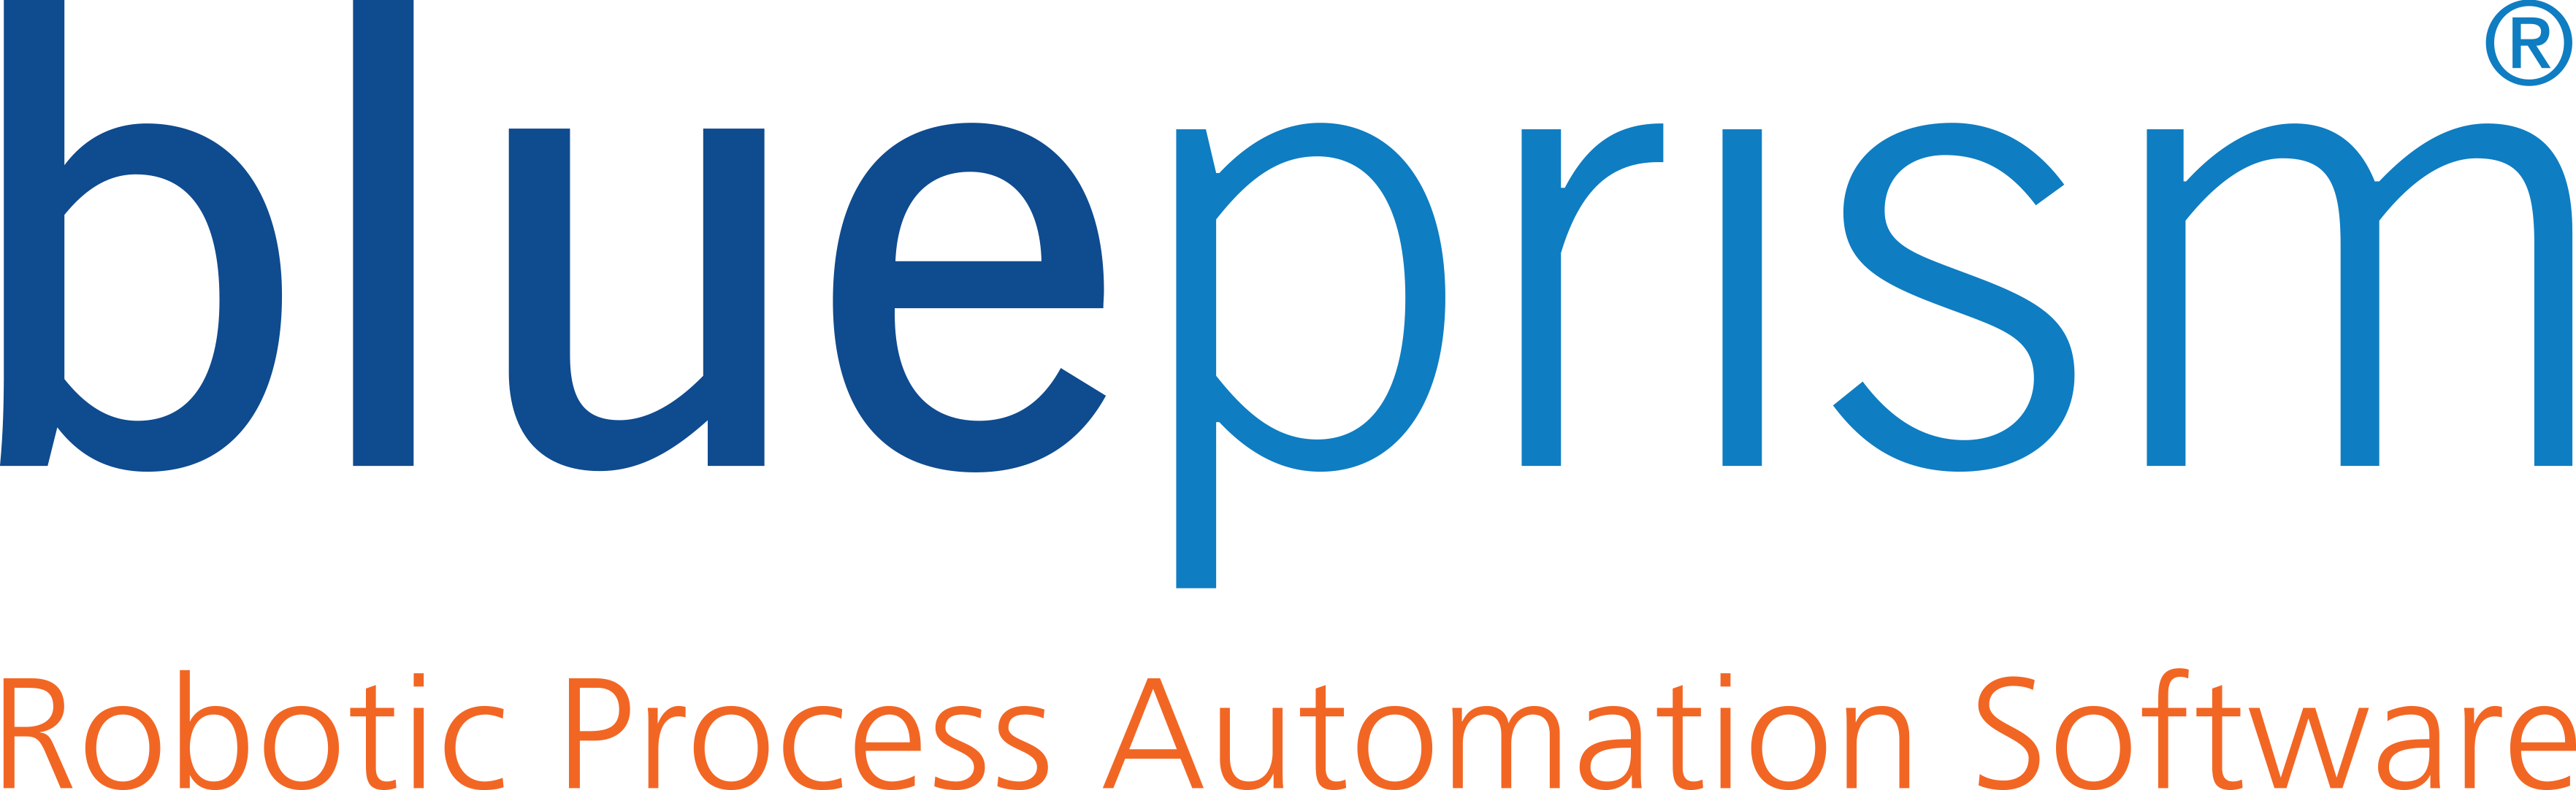 BluePrism Robotic Process Automation Software